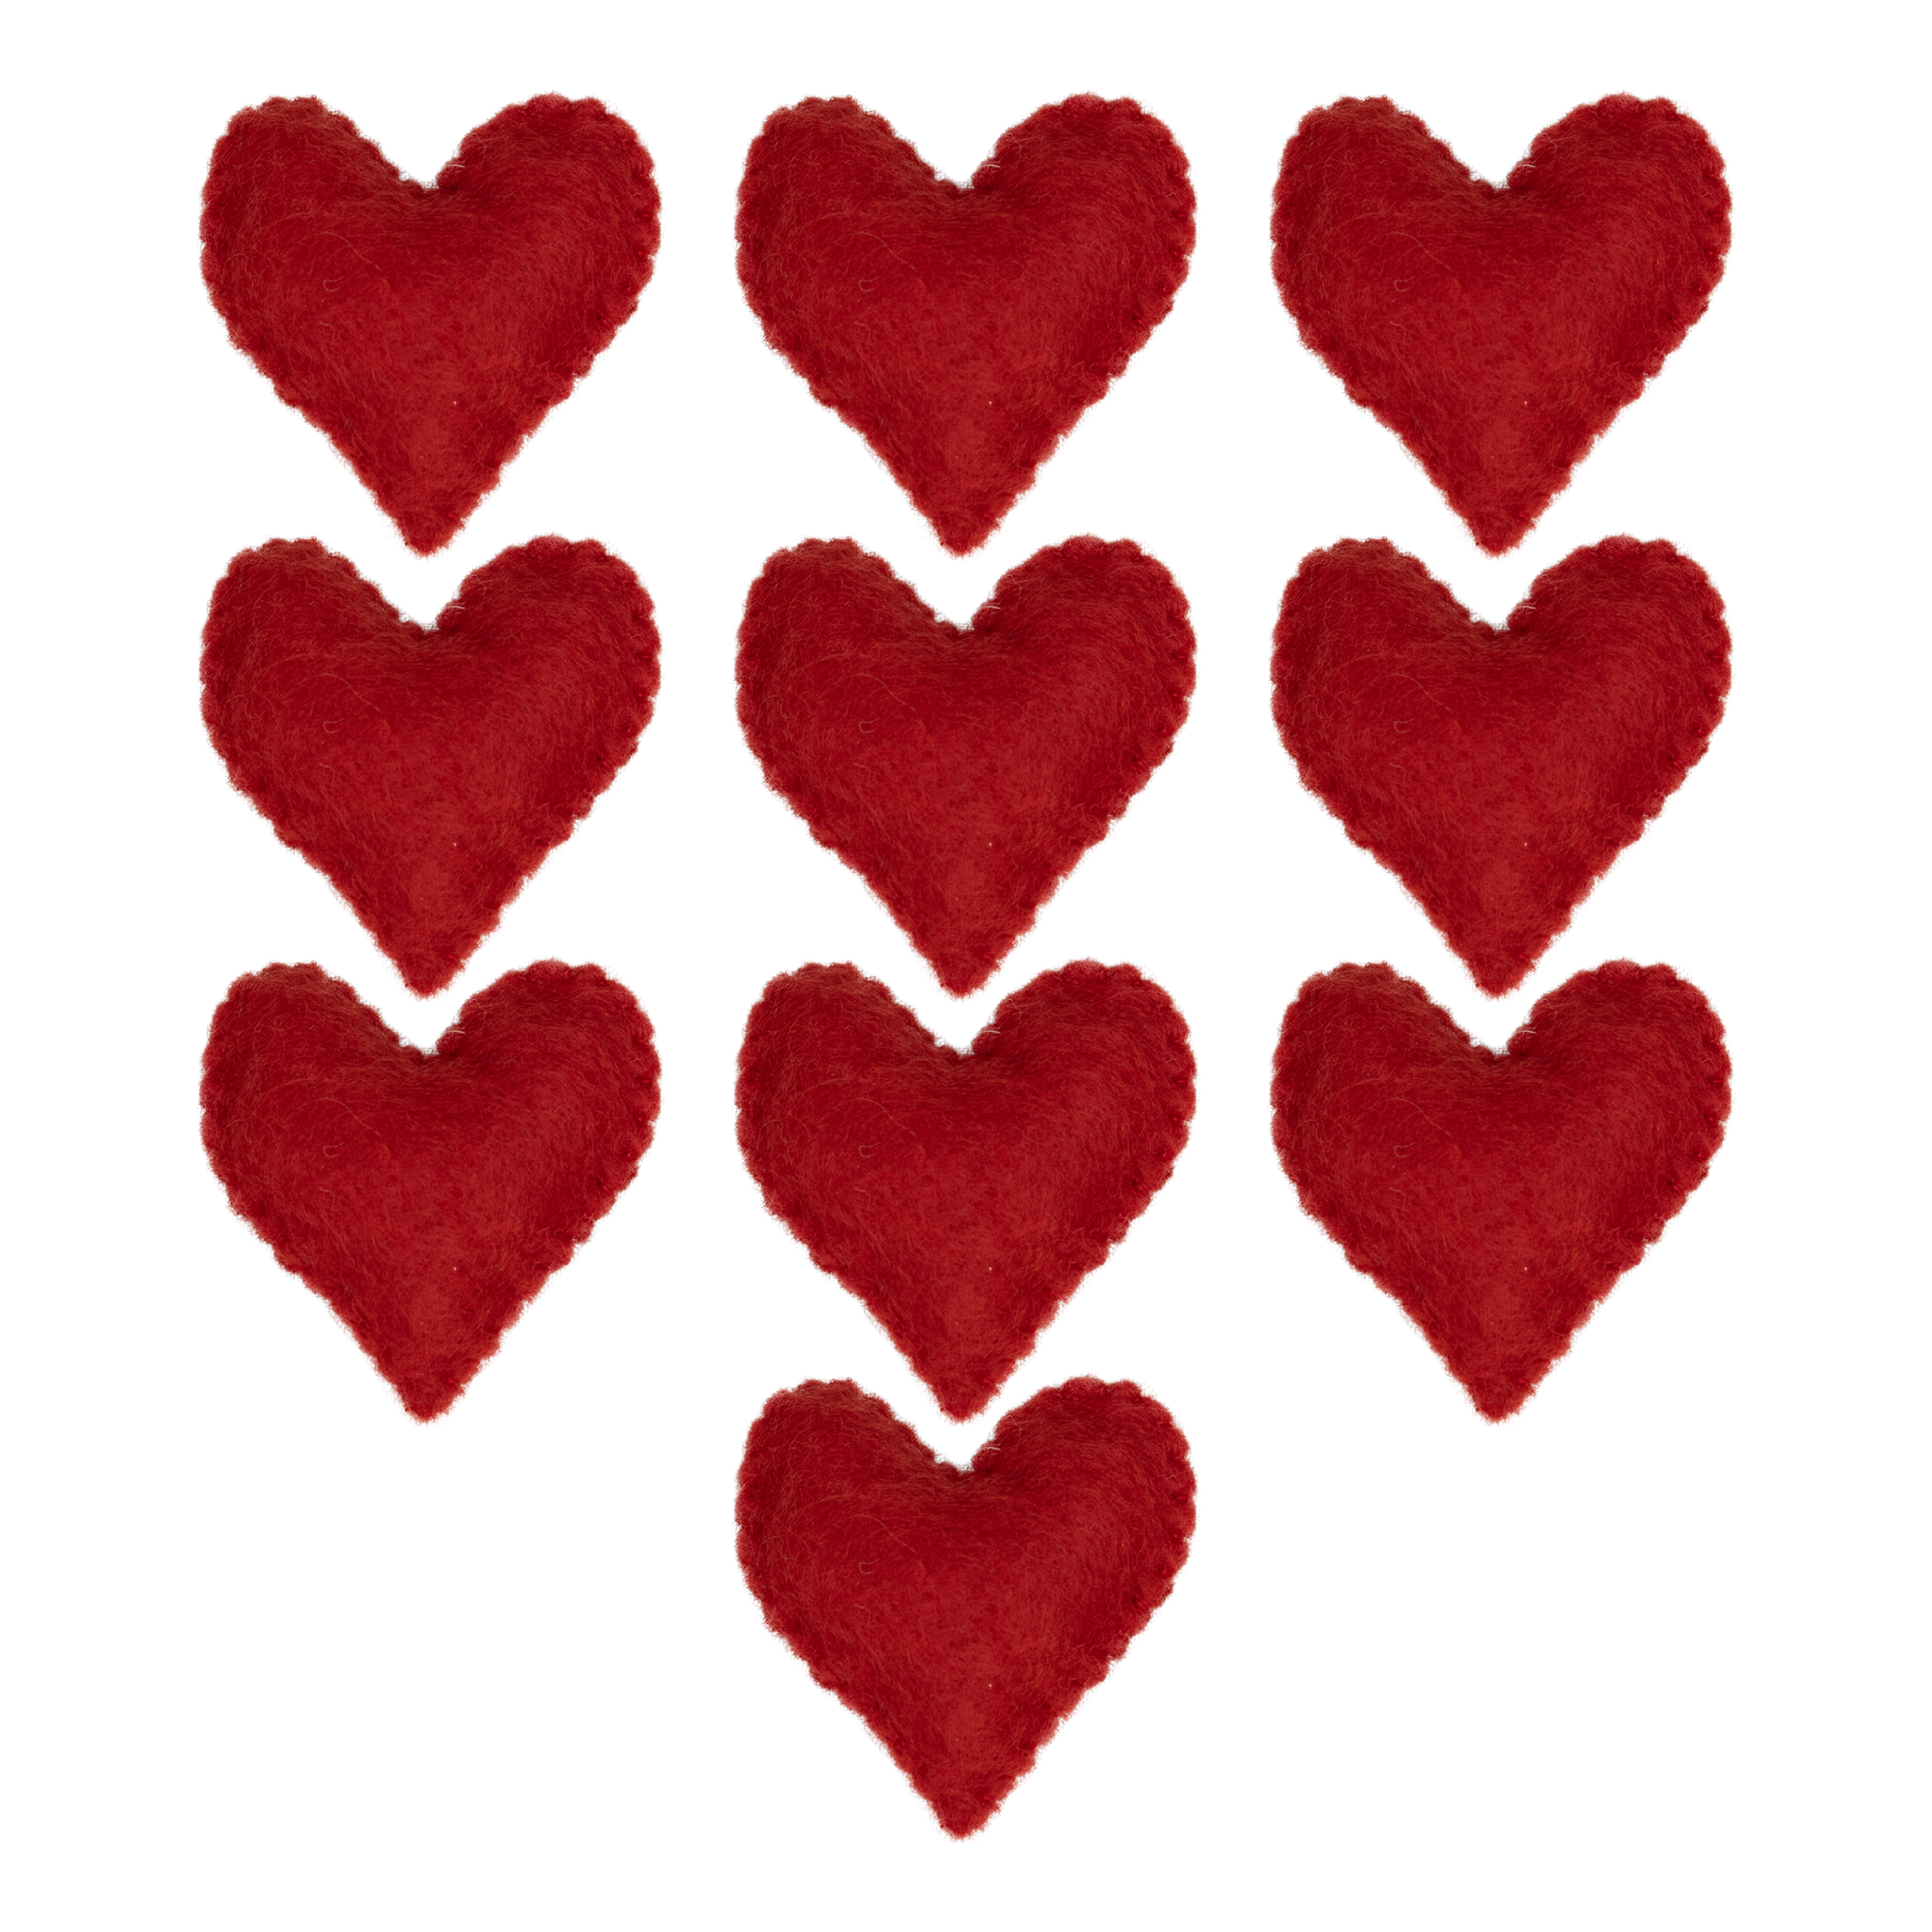 ابزار تزیینی کادو طرح قلب مدل ۰۹۷ بسته ۱۰ عددی